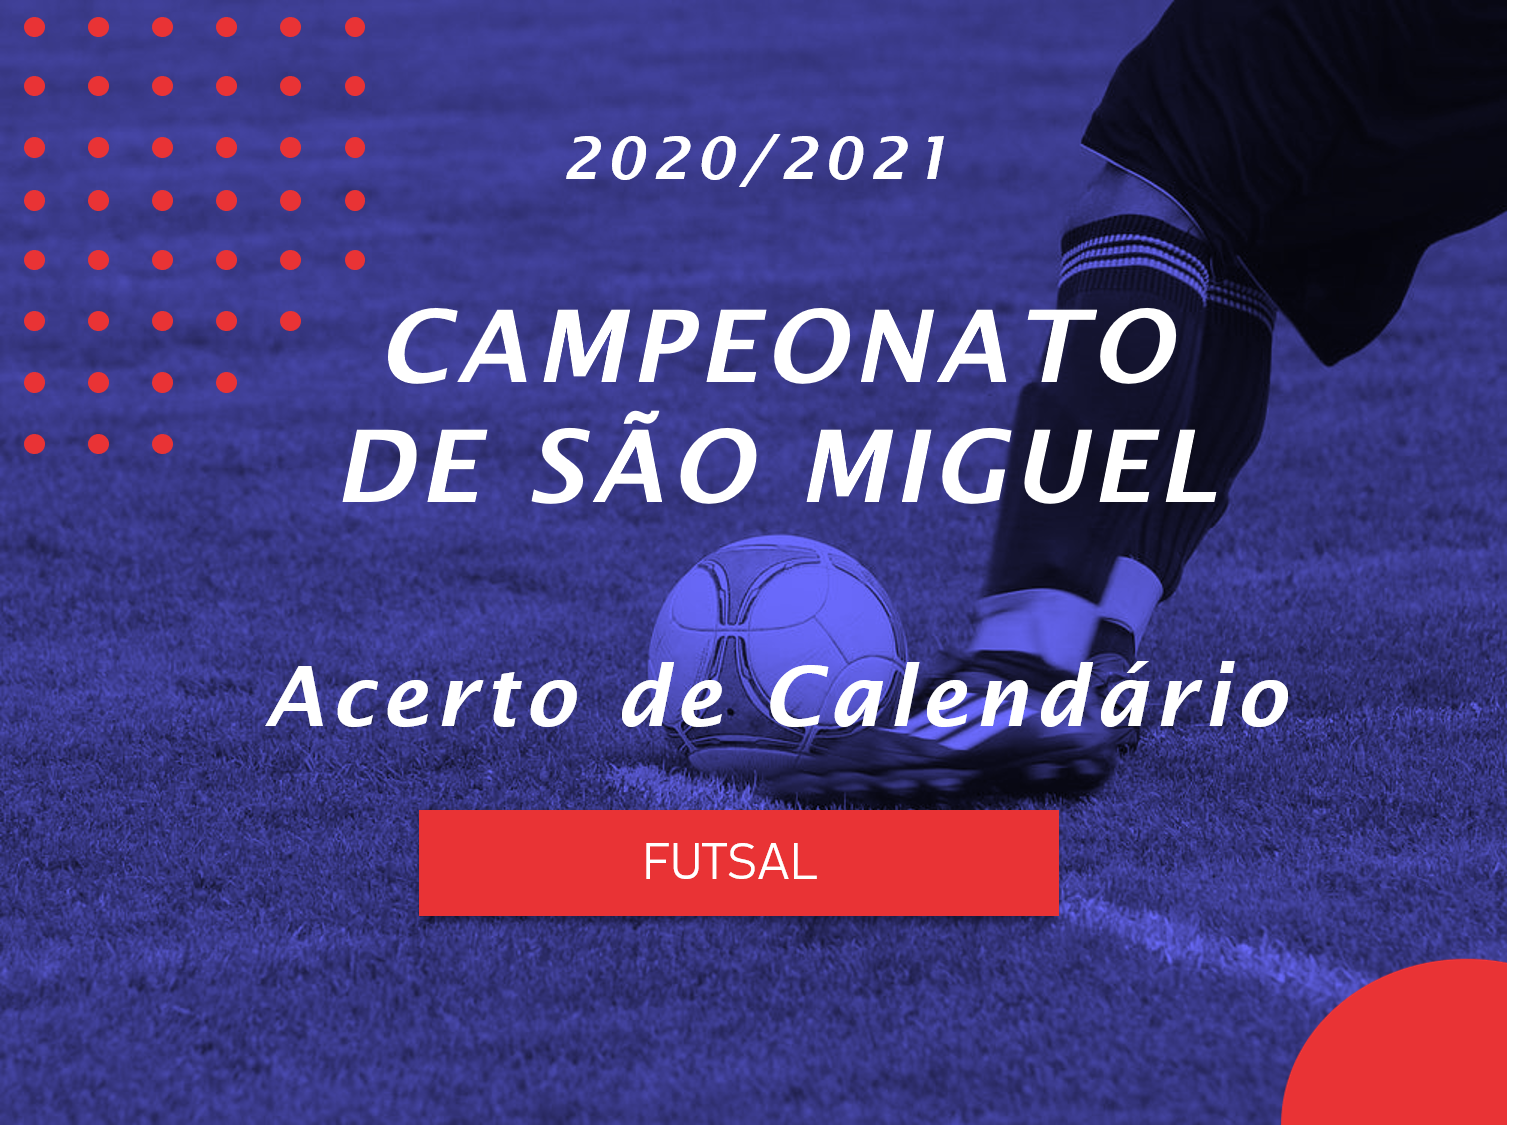 Campeonato de São Miguel - Acerto de Calendário - Futsal